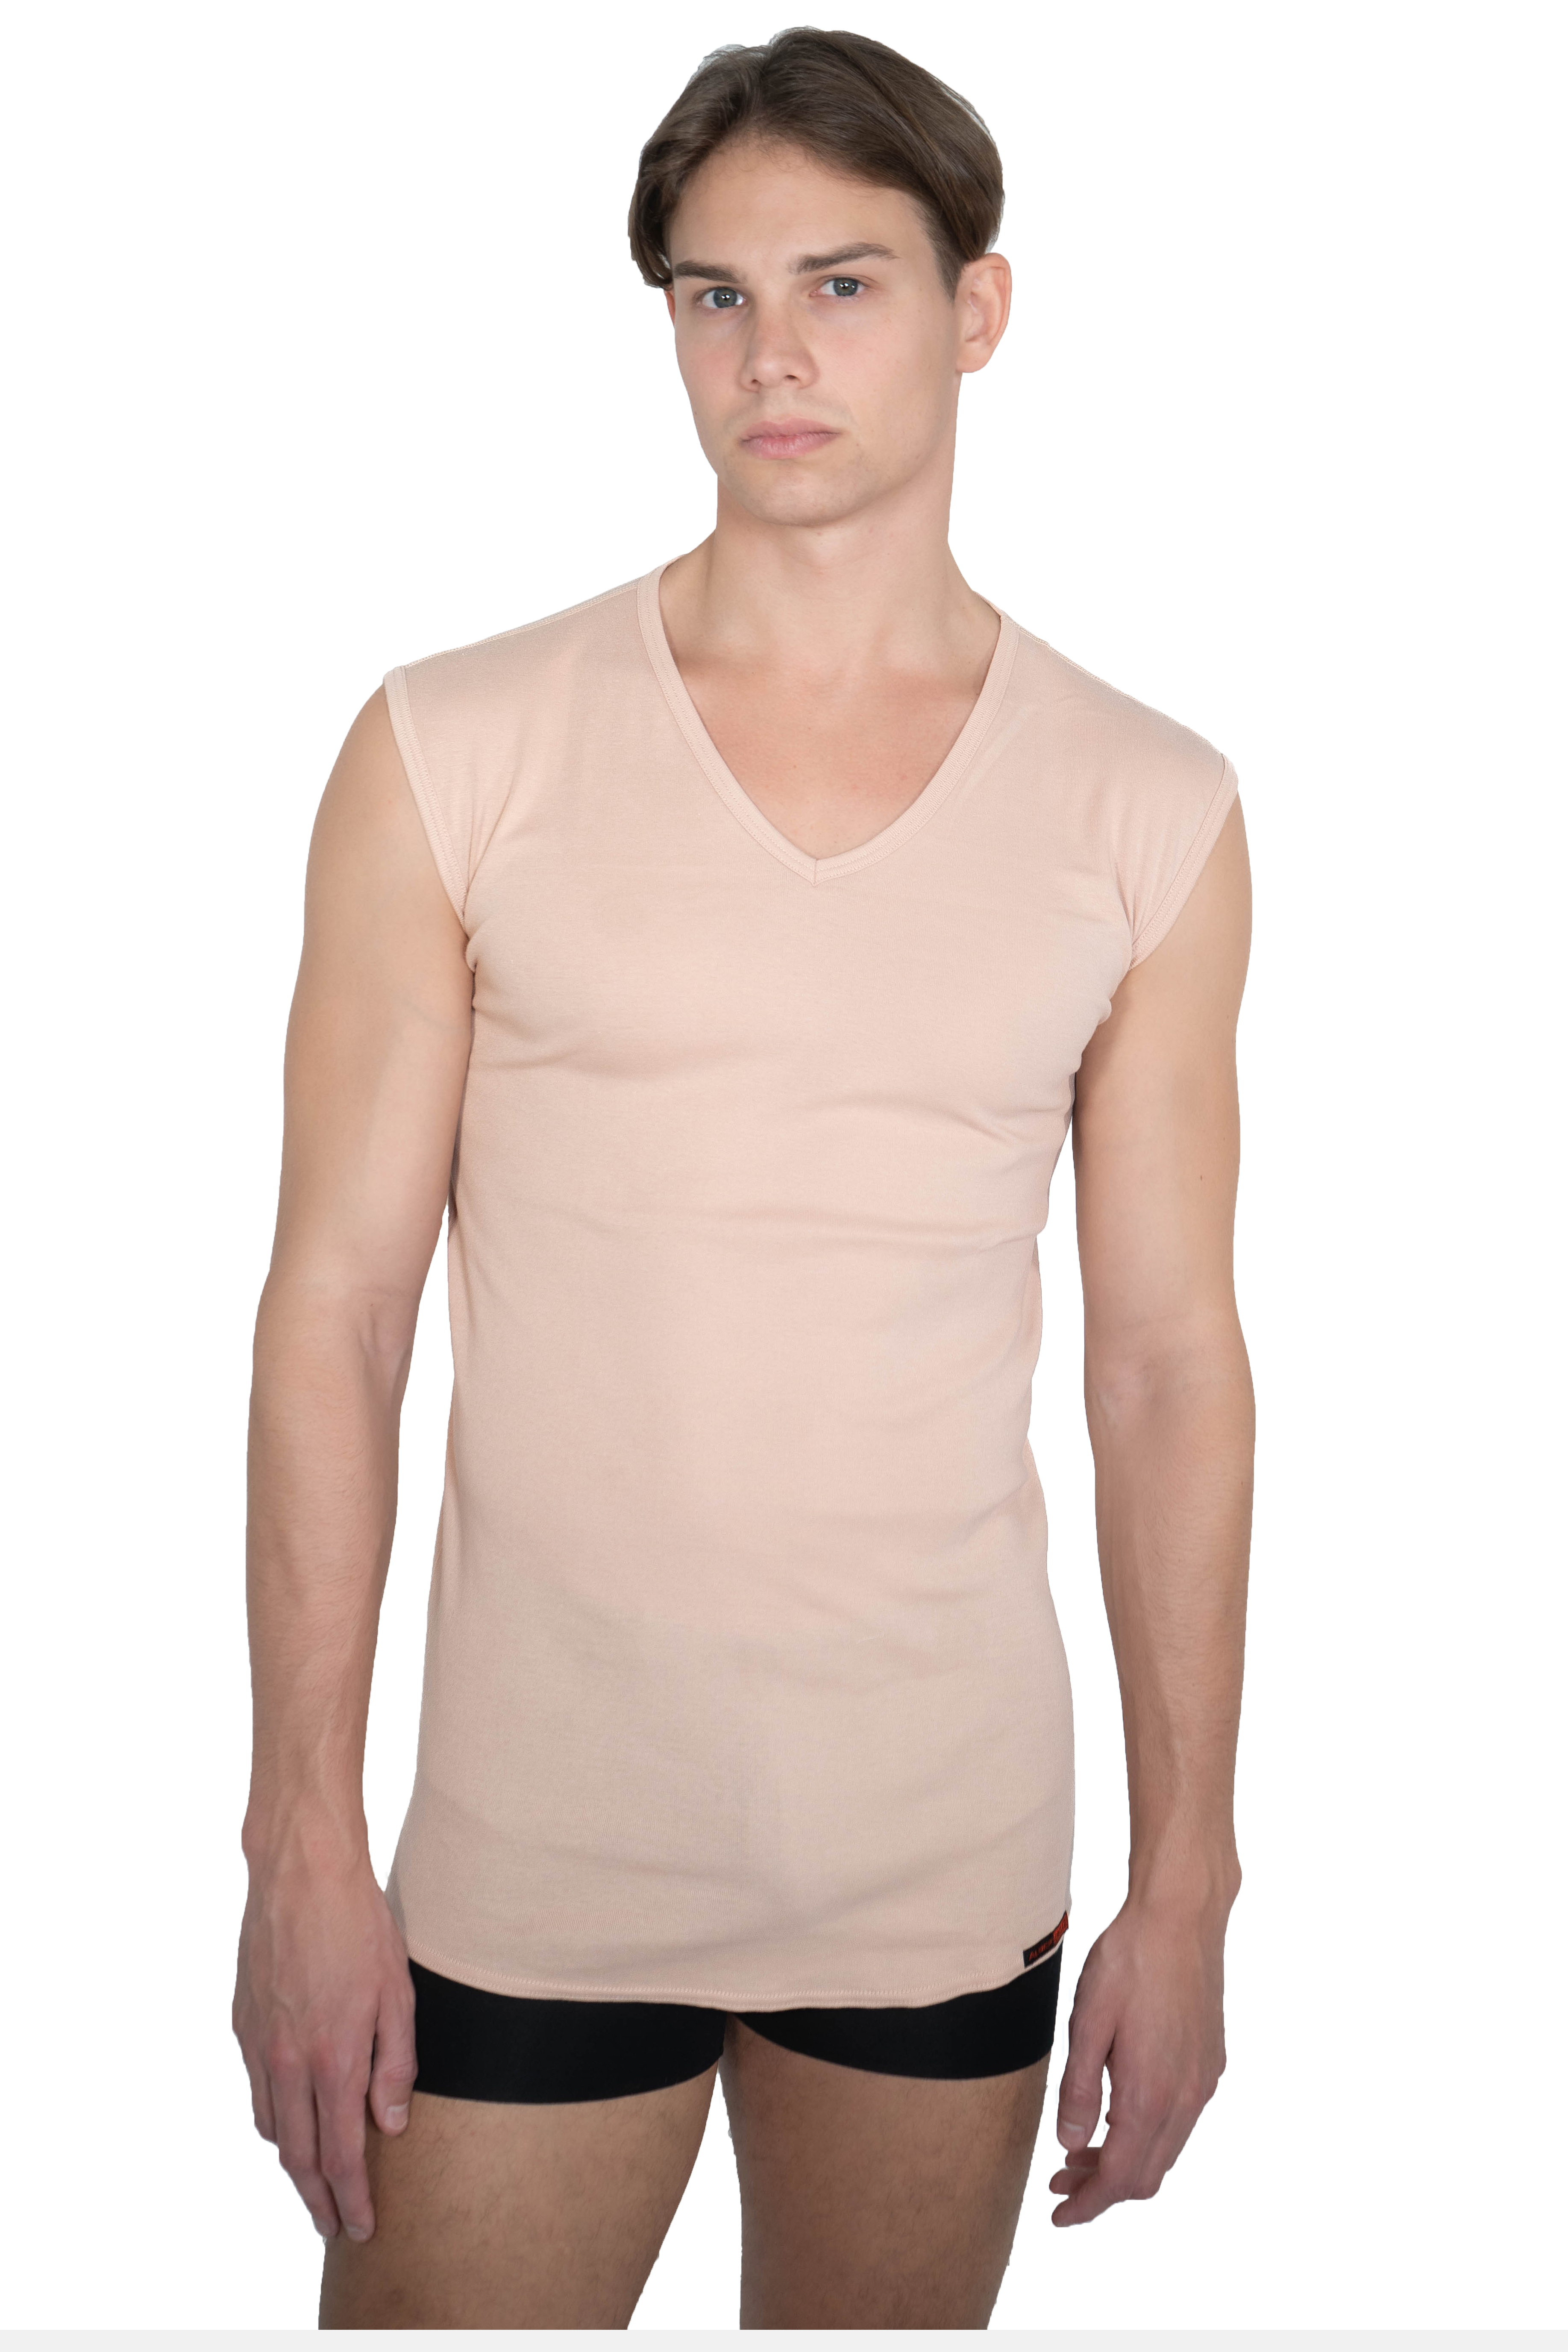 ALBERT KREUZ | Herren Unterhemd unsichtbar 100% Bio-Baumwolle ohne Arm  V-Ausschnitt